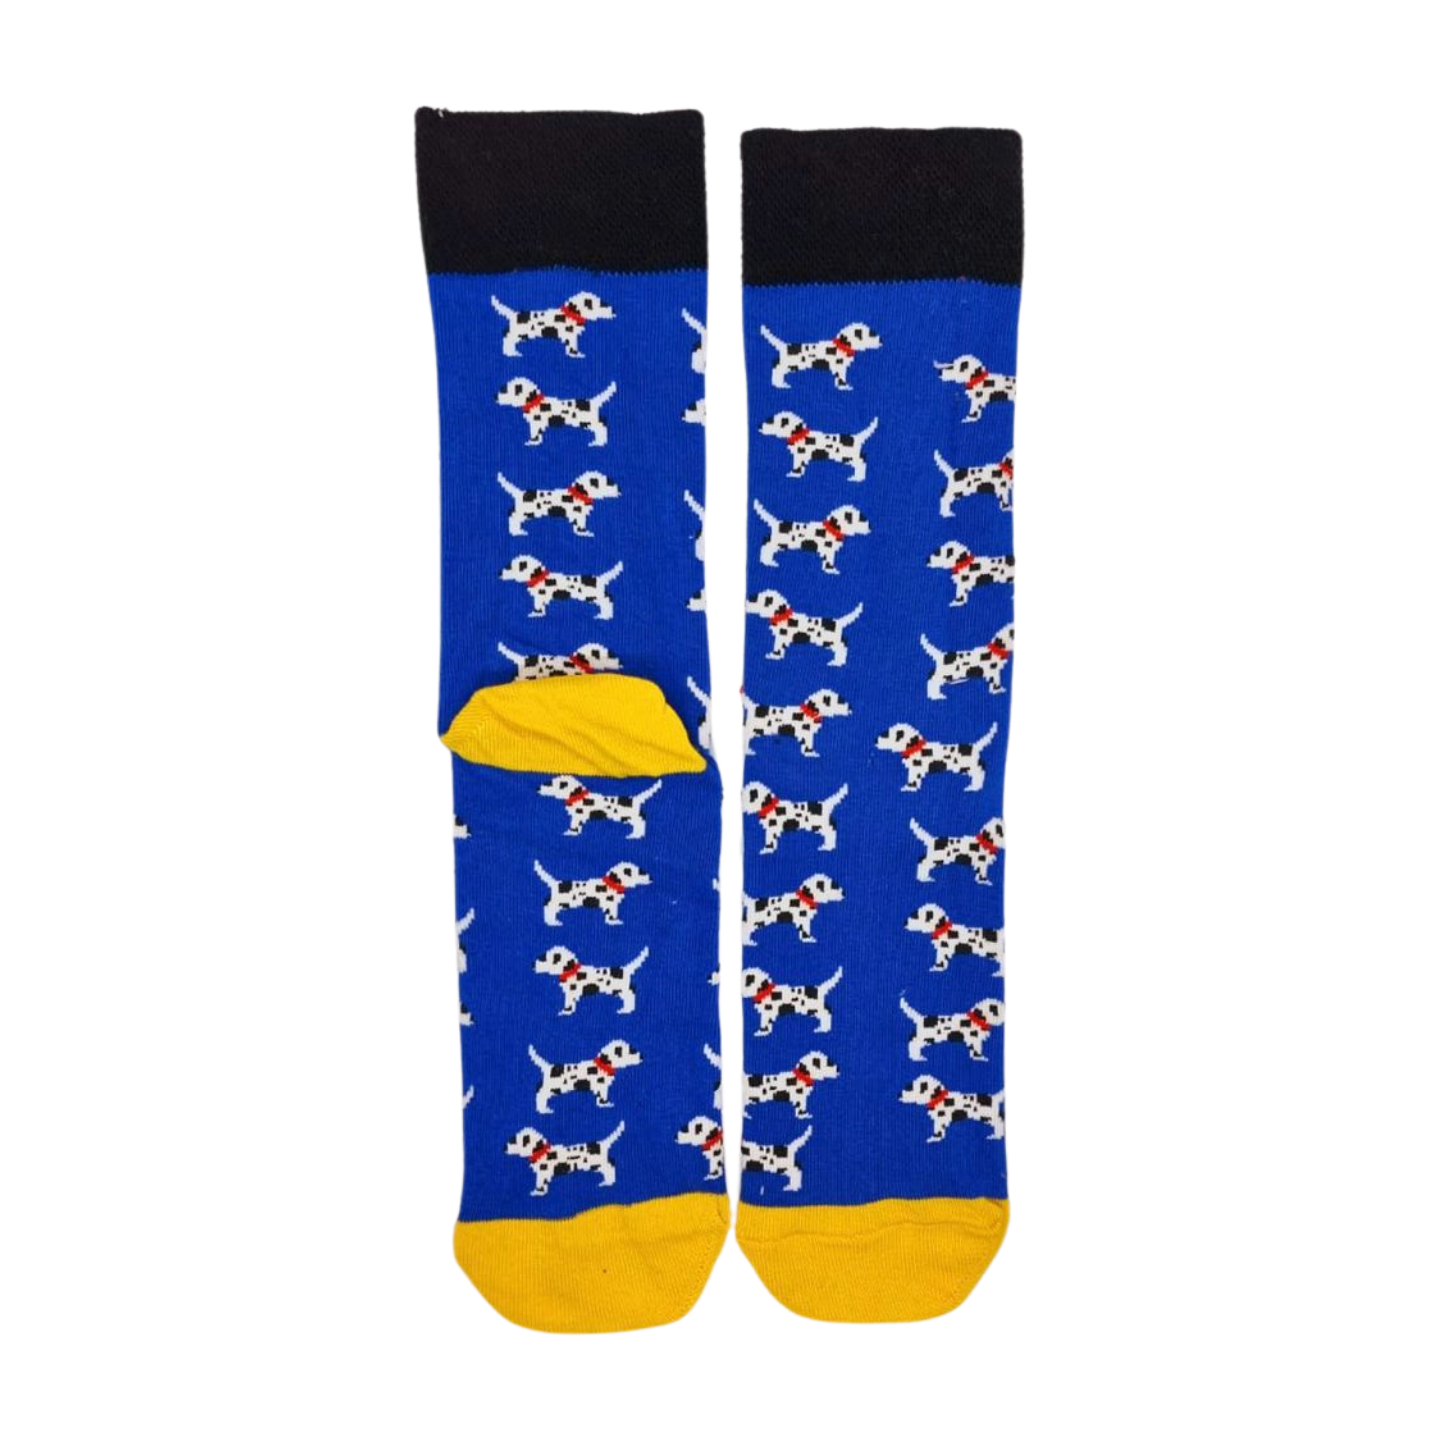 Dalmatian Dog Socks